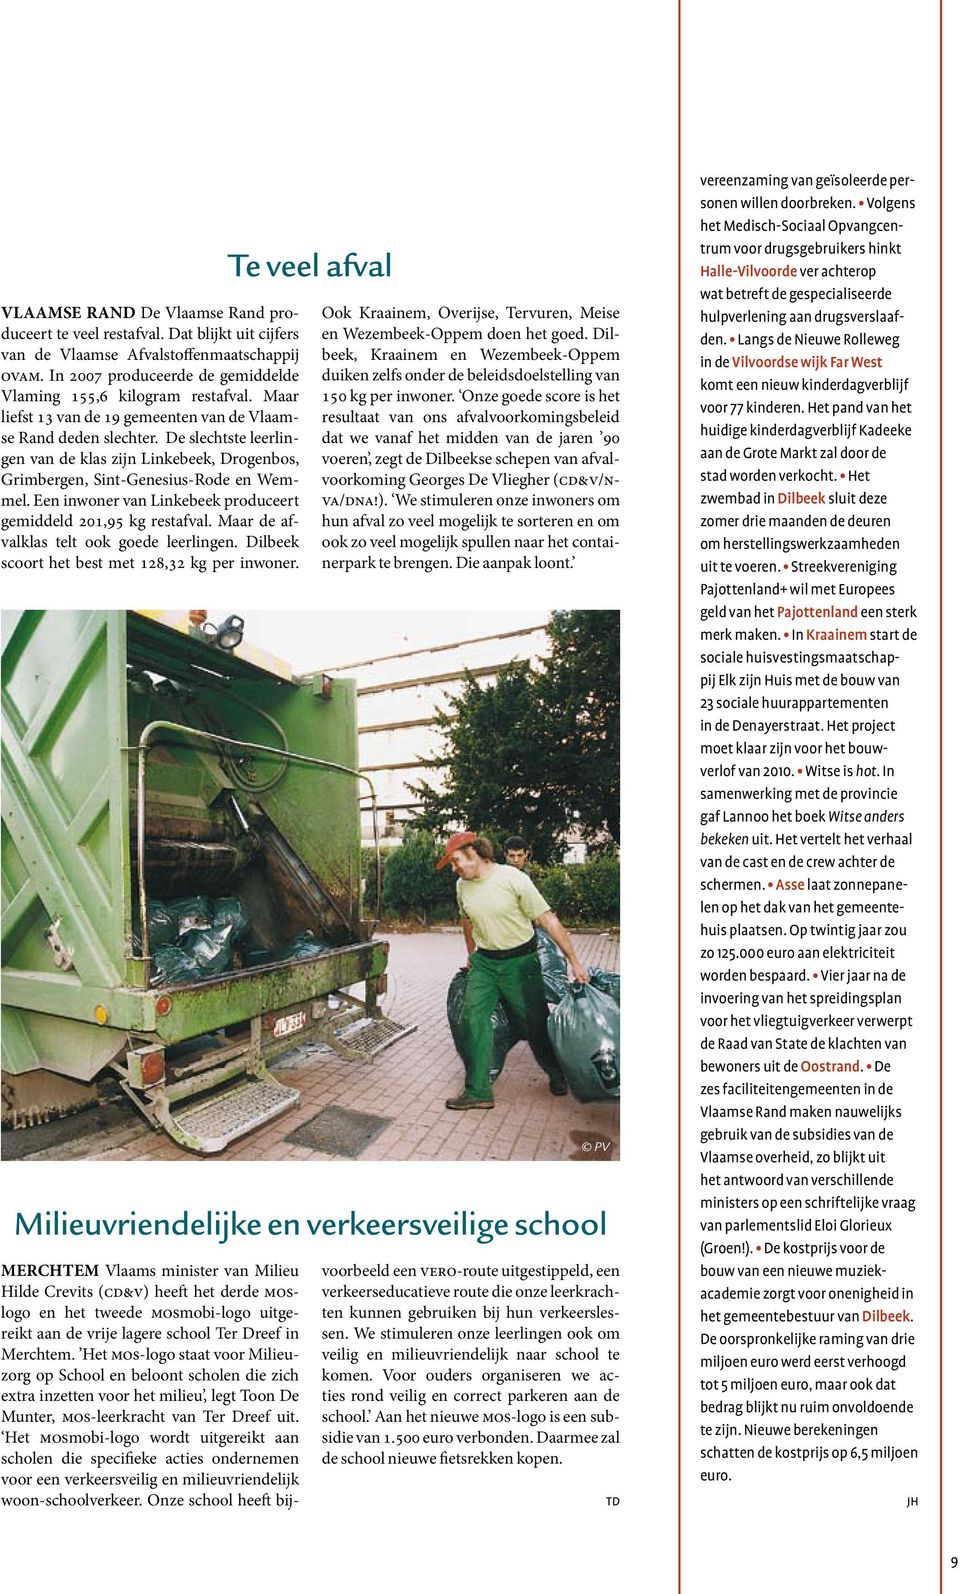 Een inwoner van Linkebeek produceert gemiddeld 201,95 kg restafval. Maar de afvalklas telt ook goede leerlingen. Dilbeek scoort het best met 128,32 kg per inwoner.